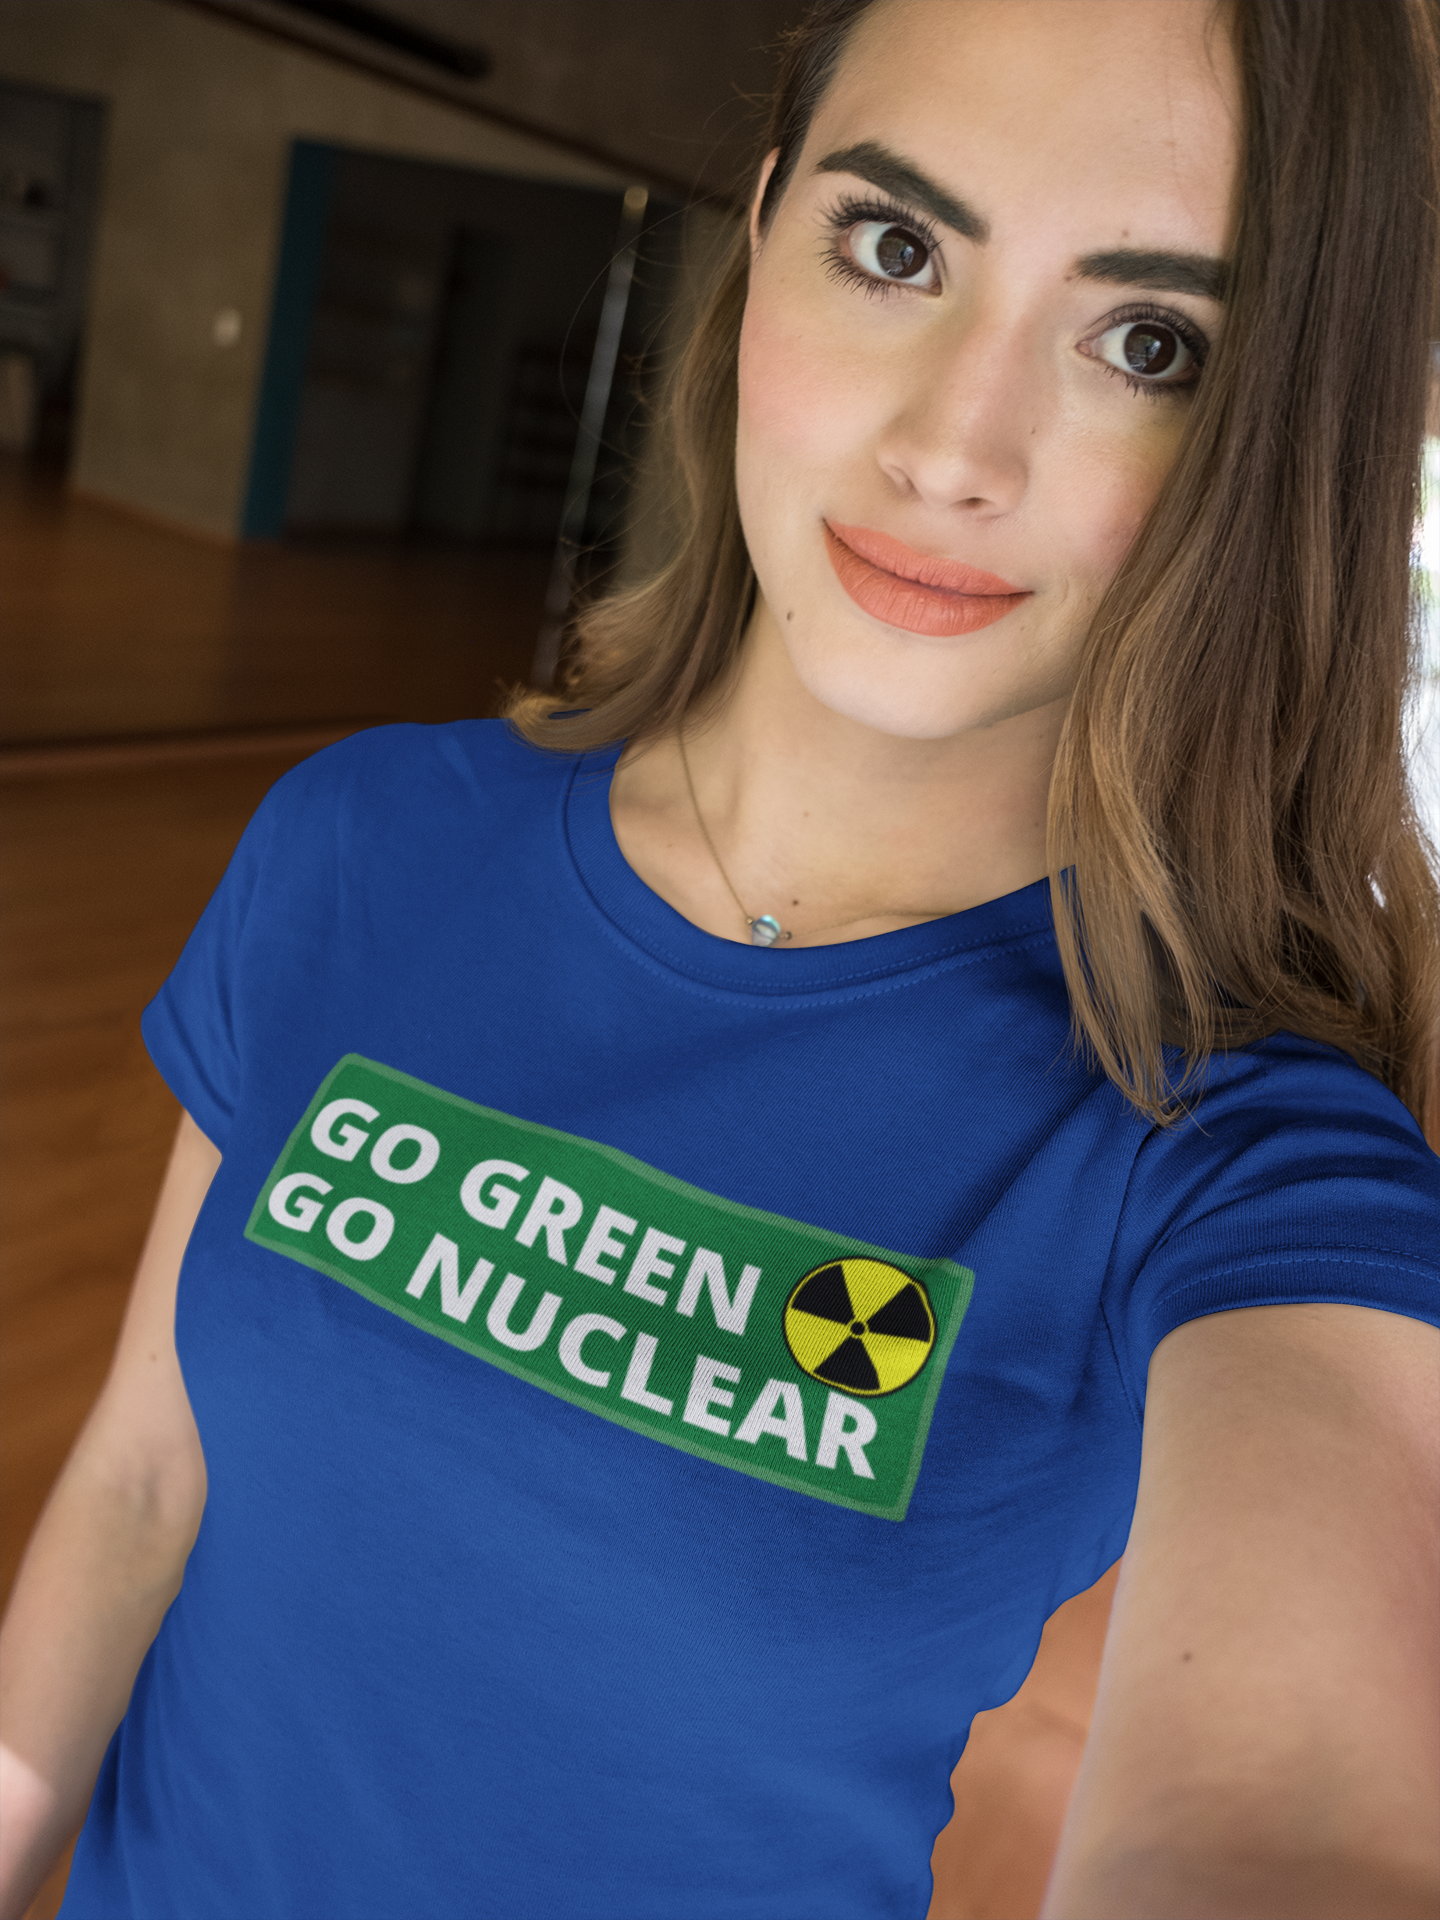 Dam T-Shirt i flera färger & storlekar. Vi som väljer svensk kärnkraft